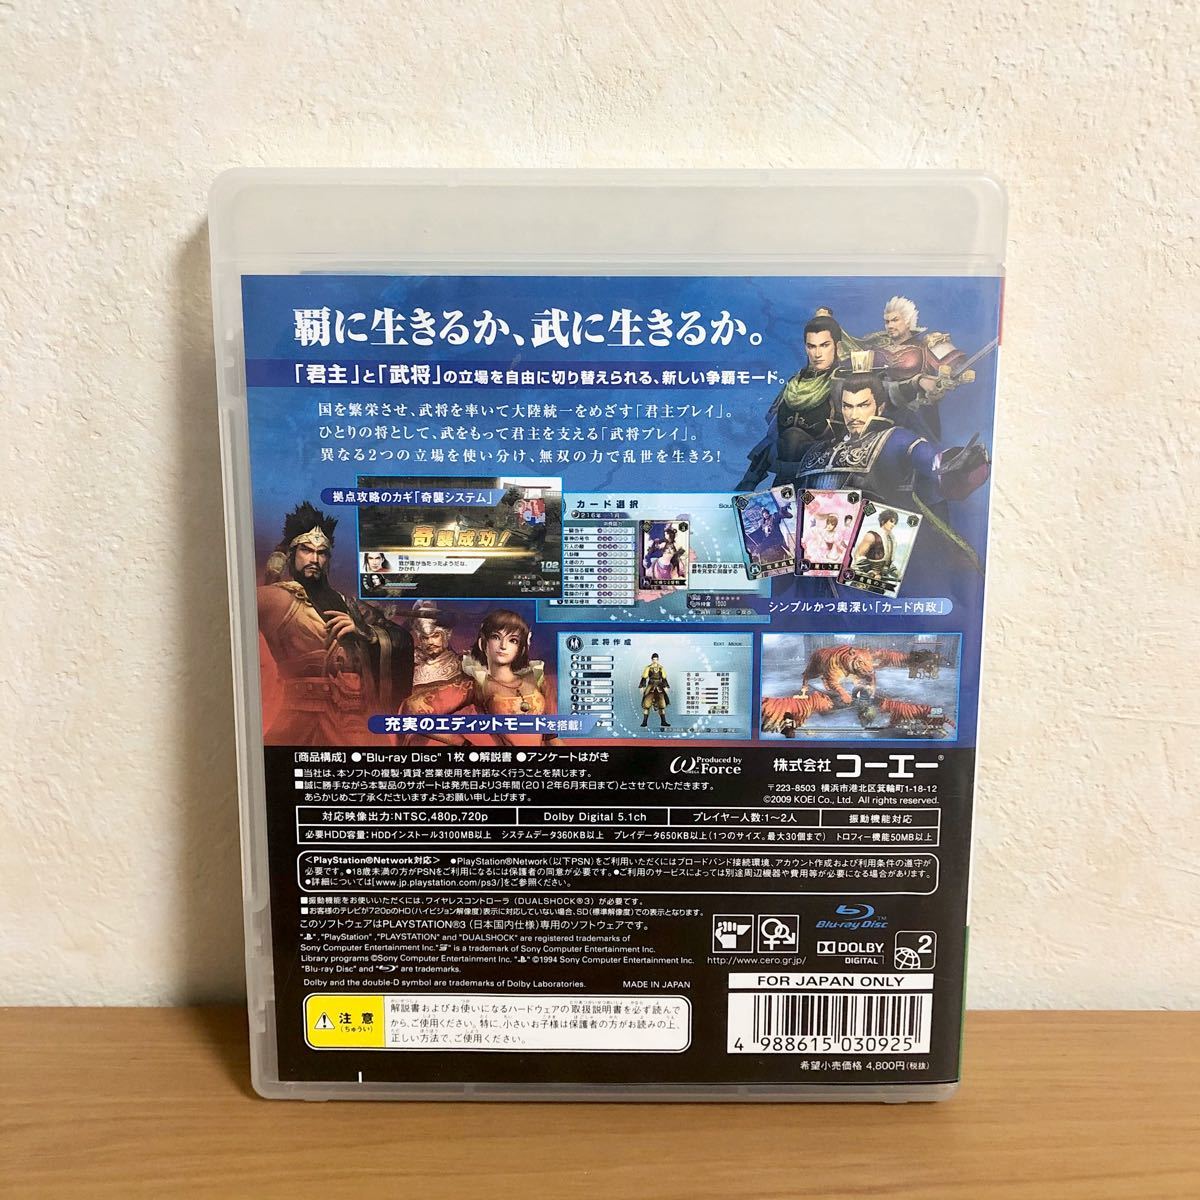 【PS3】 真・三國無双5 Empires [通常版]